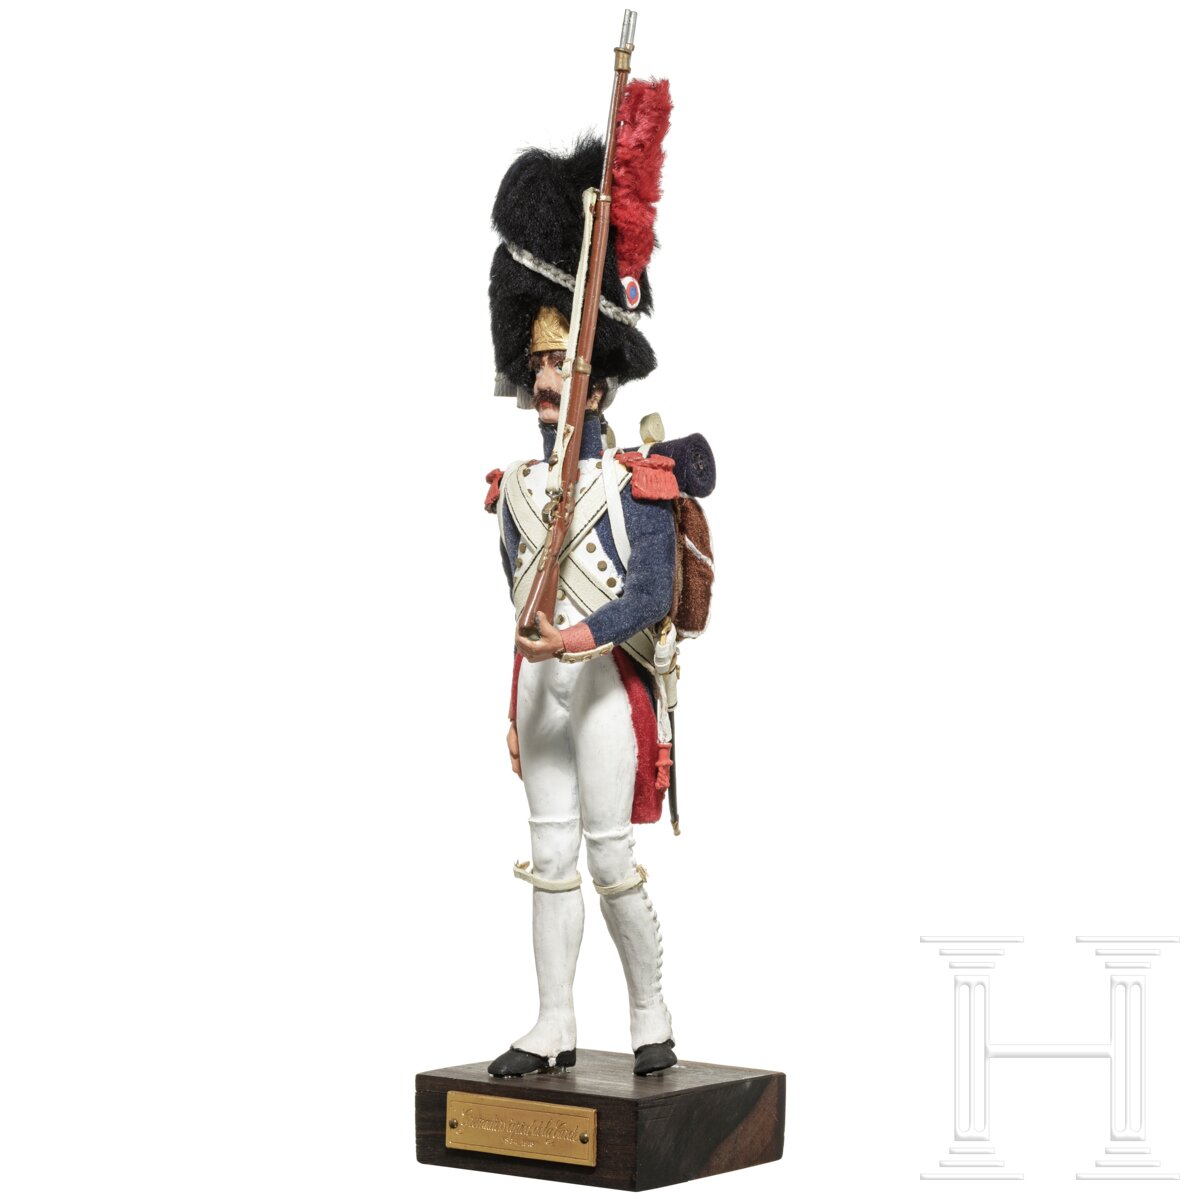 Gardegrenadier ab 1804 - Uniformfigur von Marcel Riffet, 20. Jhdt. - Image 3 of 6